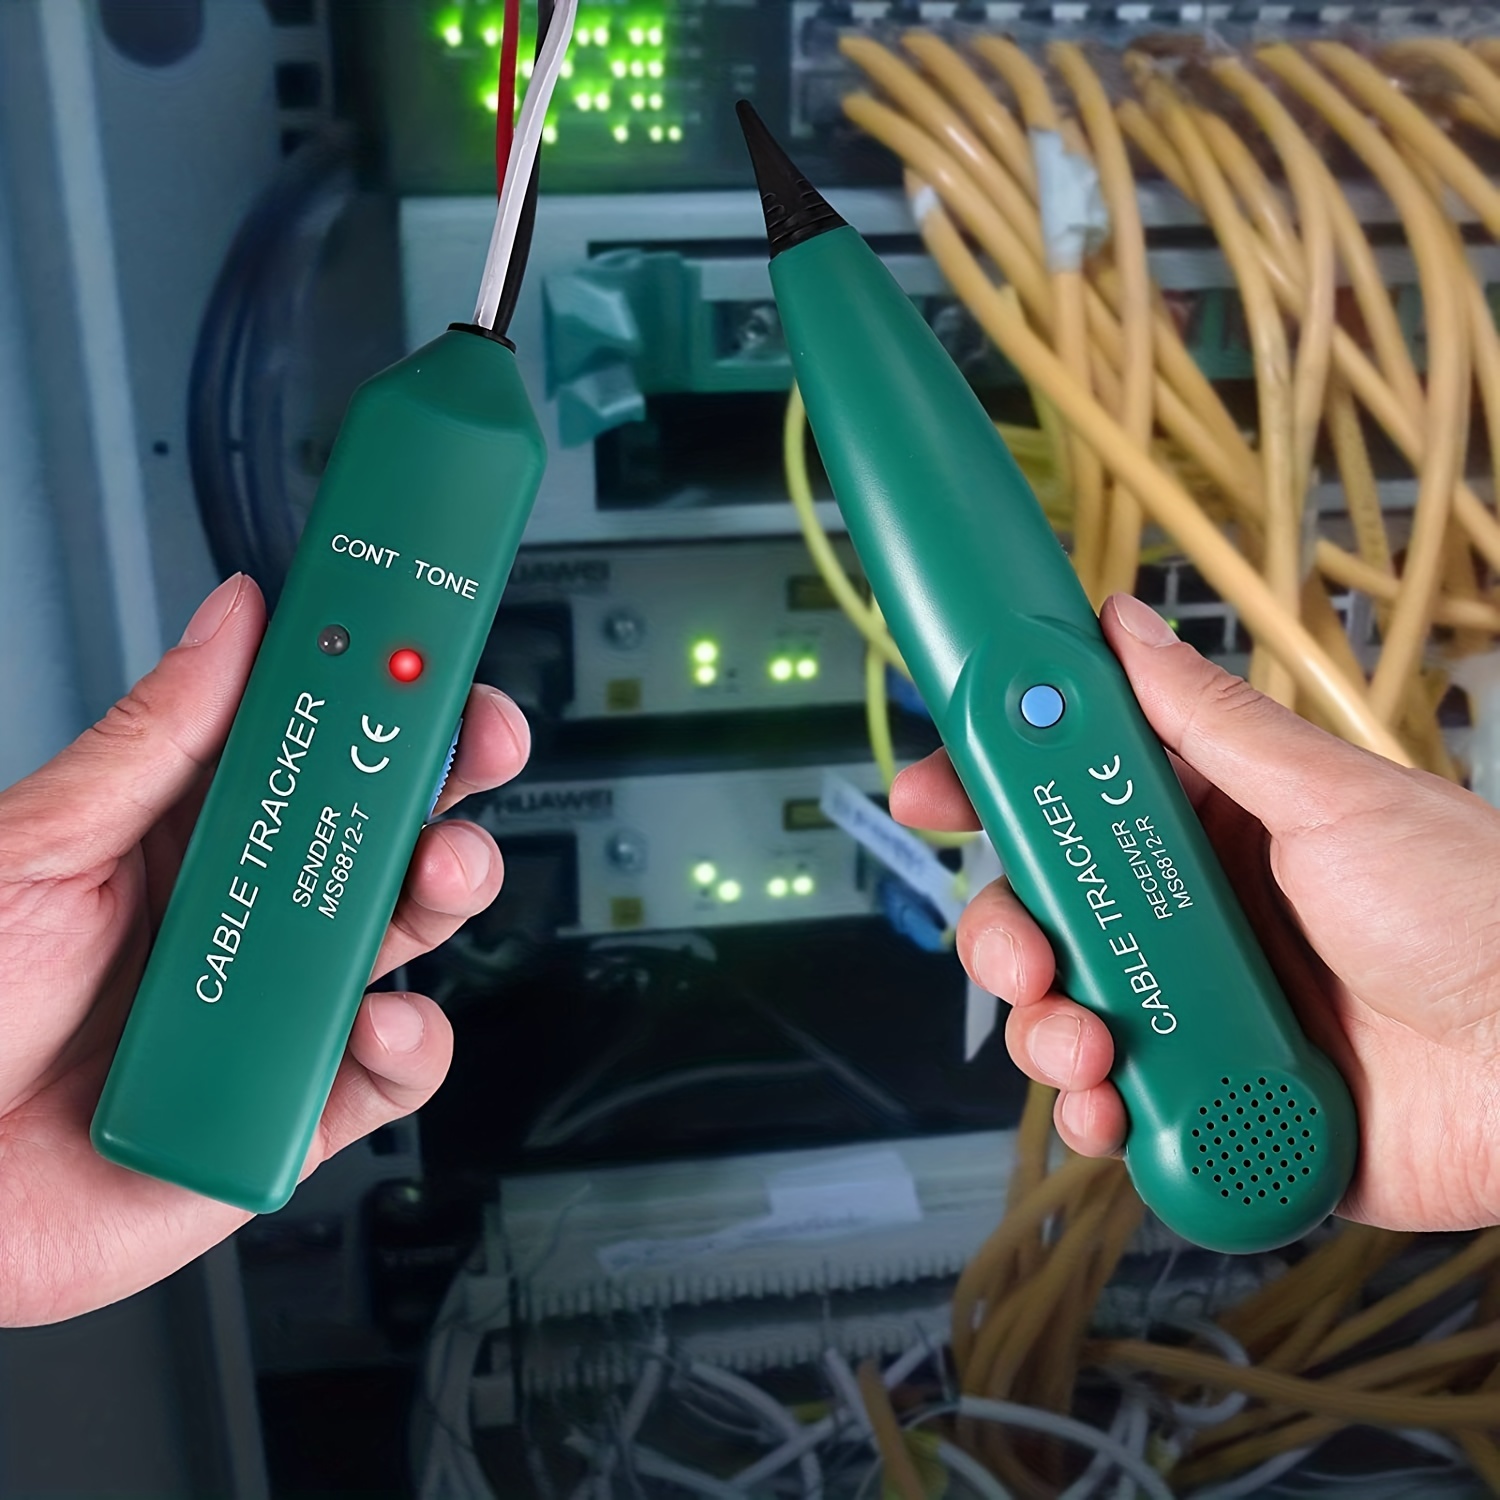 Tester Comprobador de Cables Red RJ45 RJ11 LAN de segunda mano por